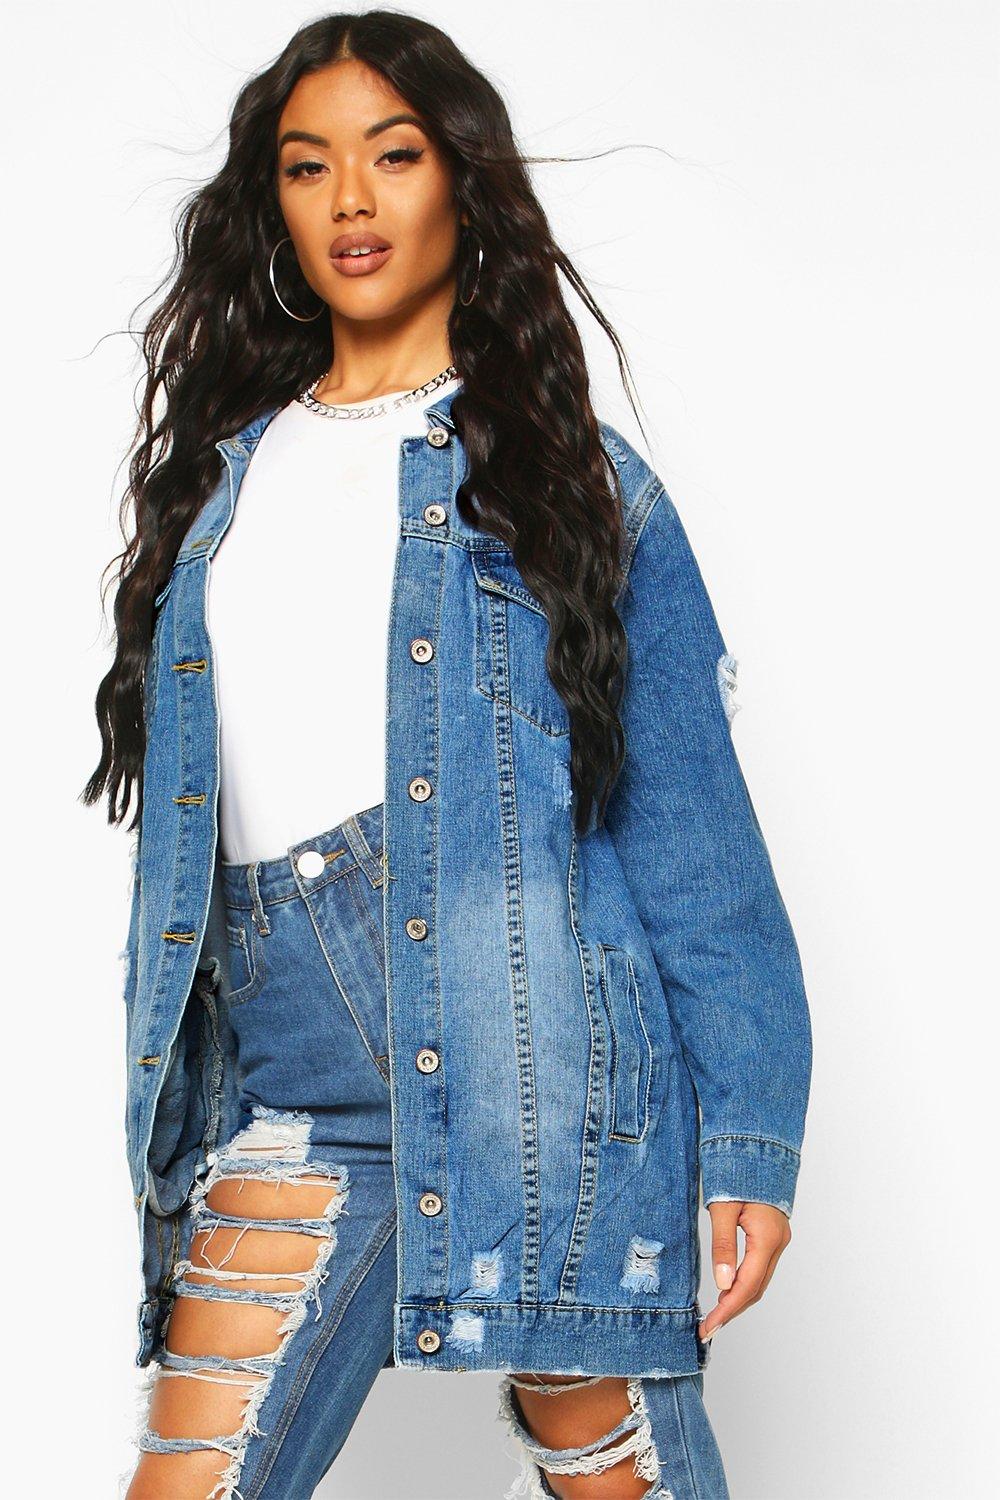 women's distressed blue jean jacket